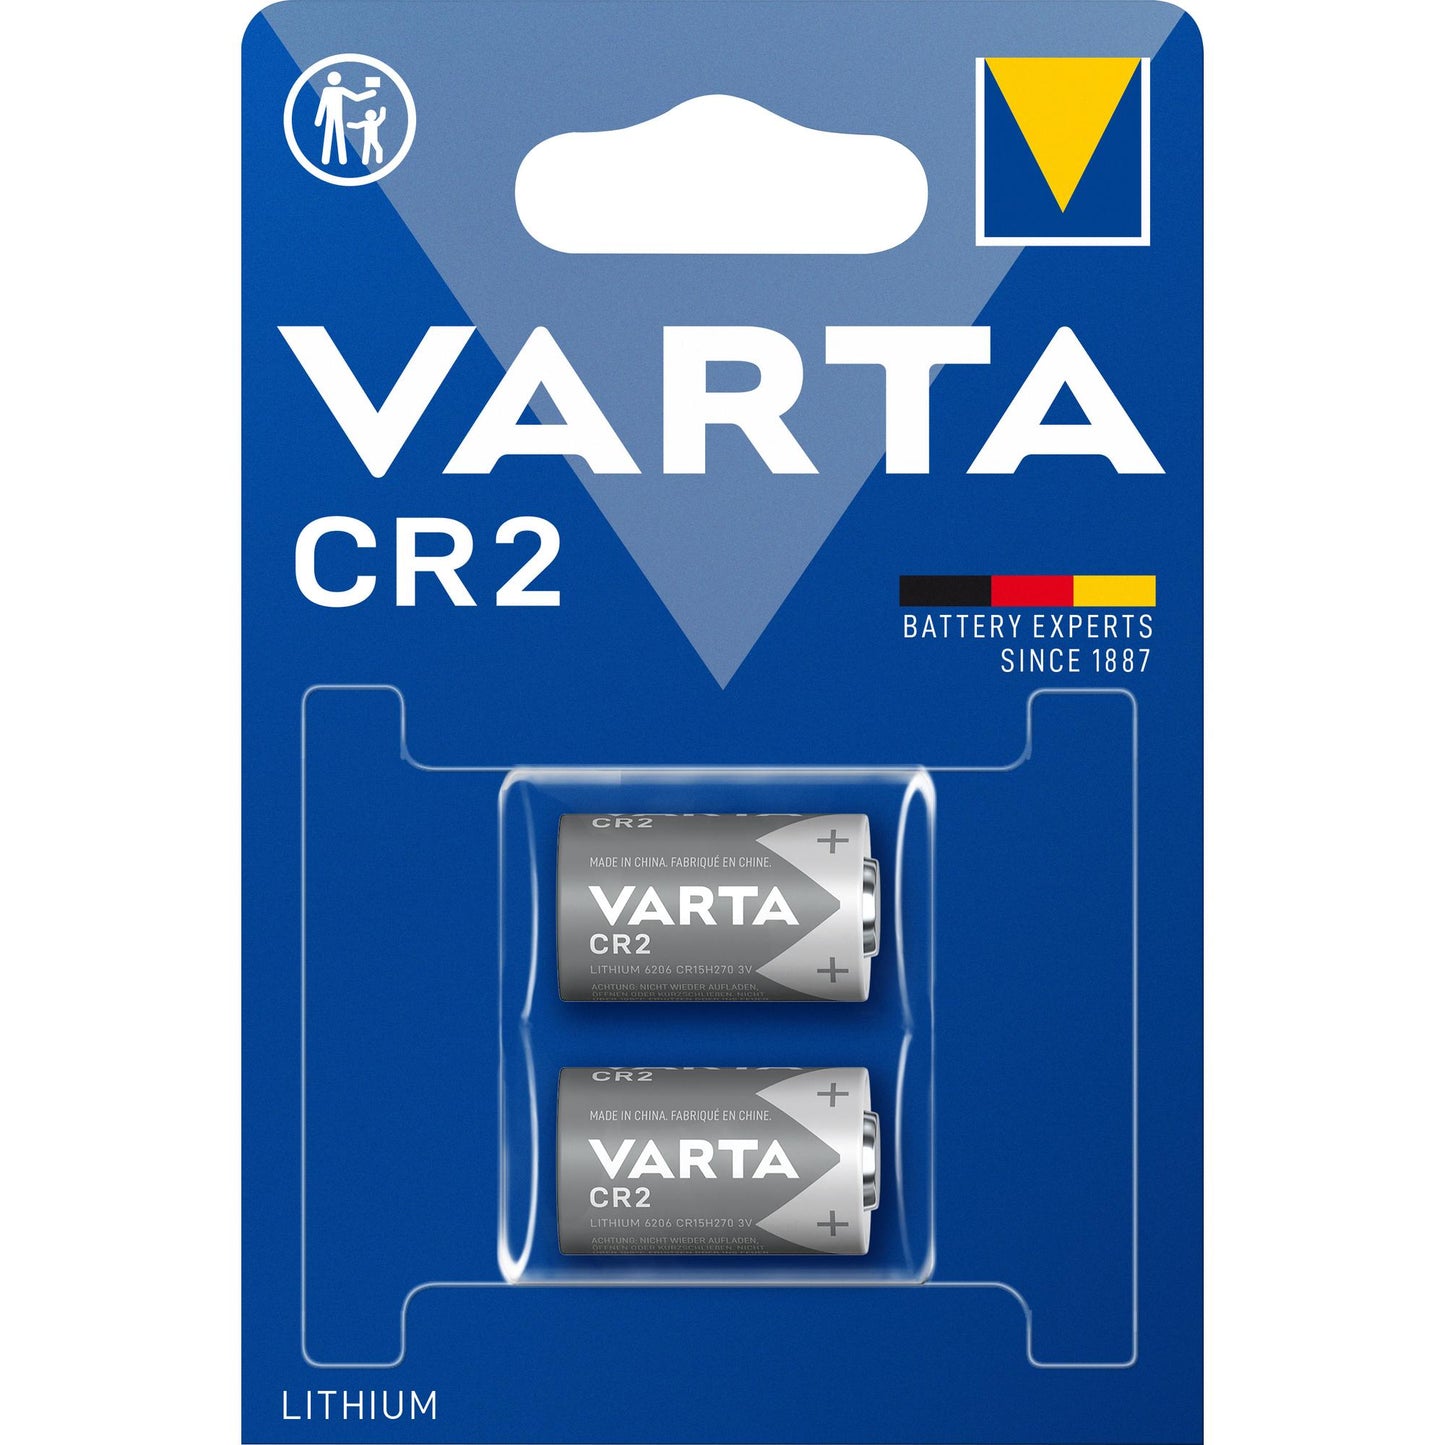 VARTA Batterie Lithium CR2, 3V Photo, Retail Blister (2-Pack)